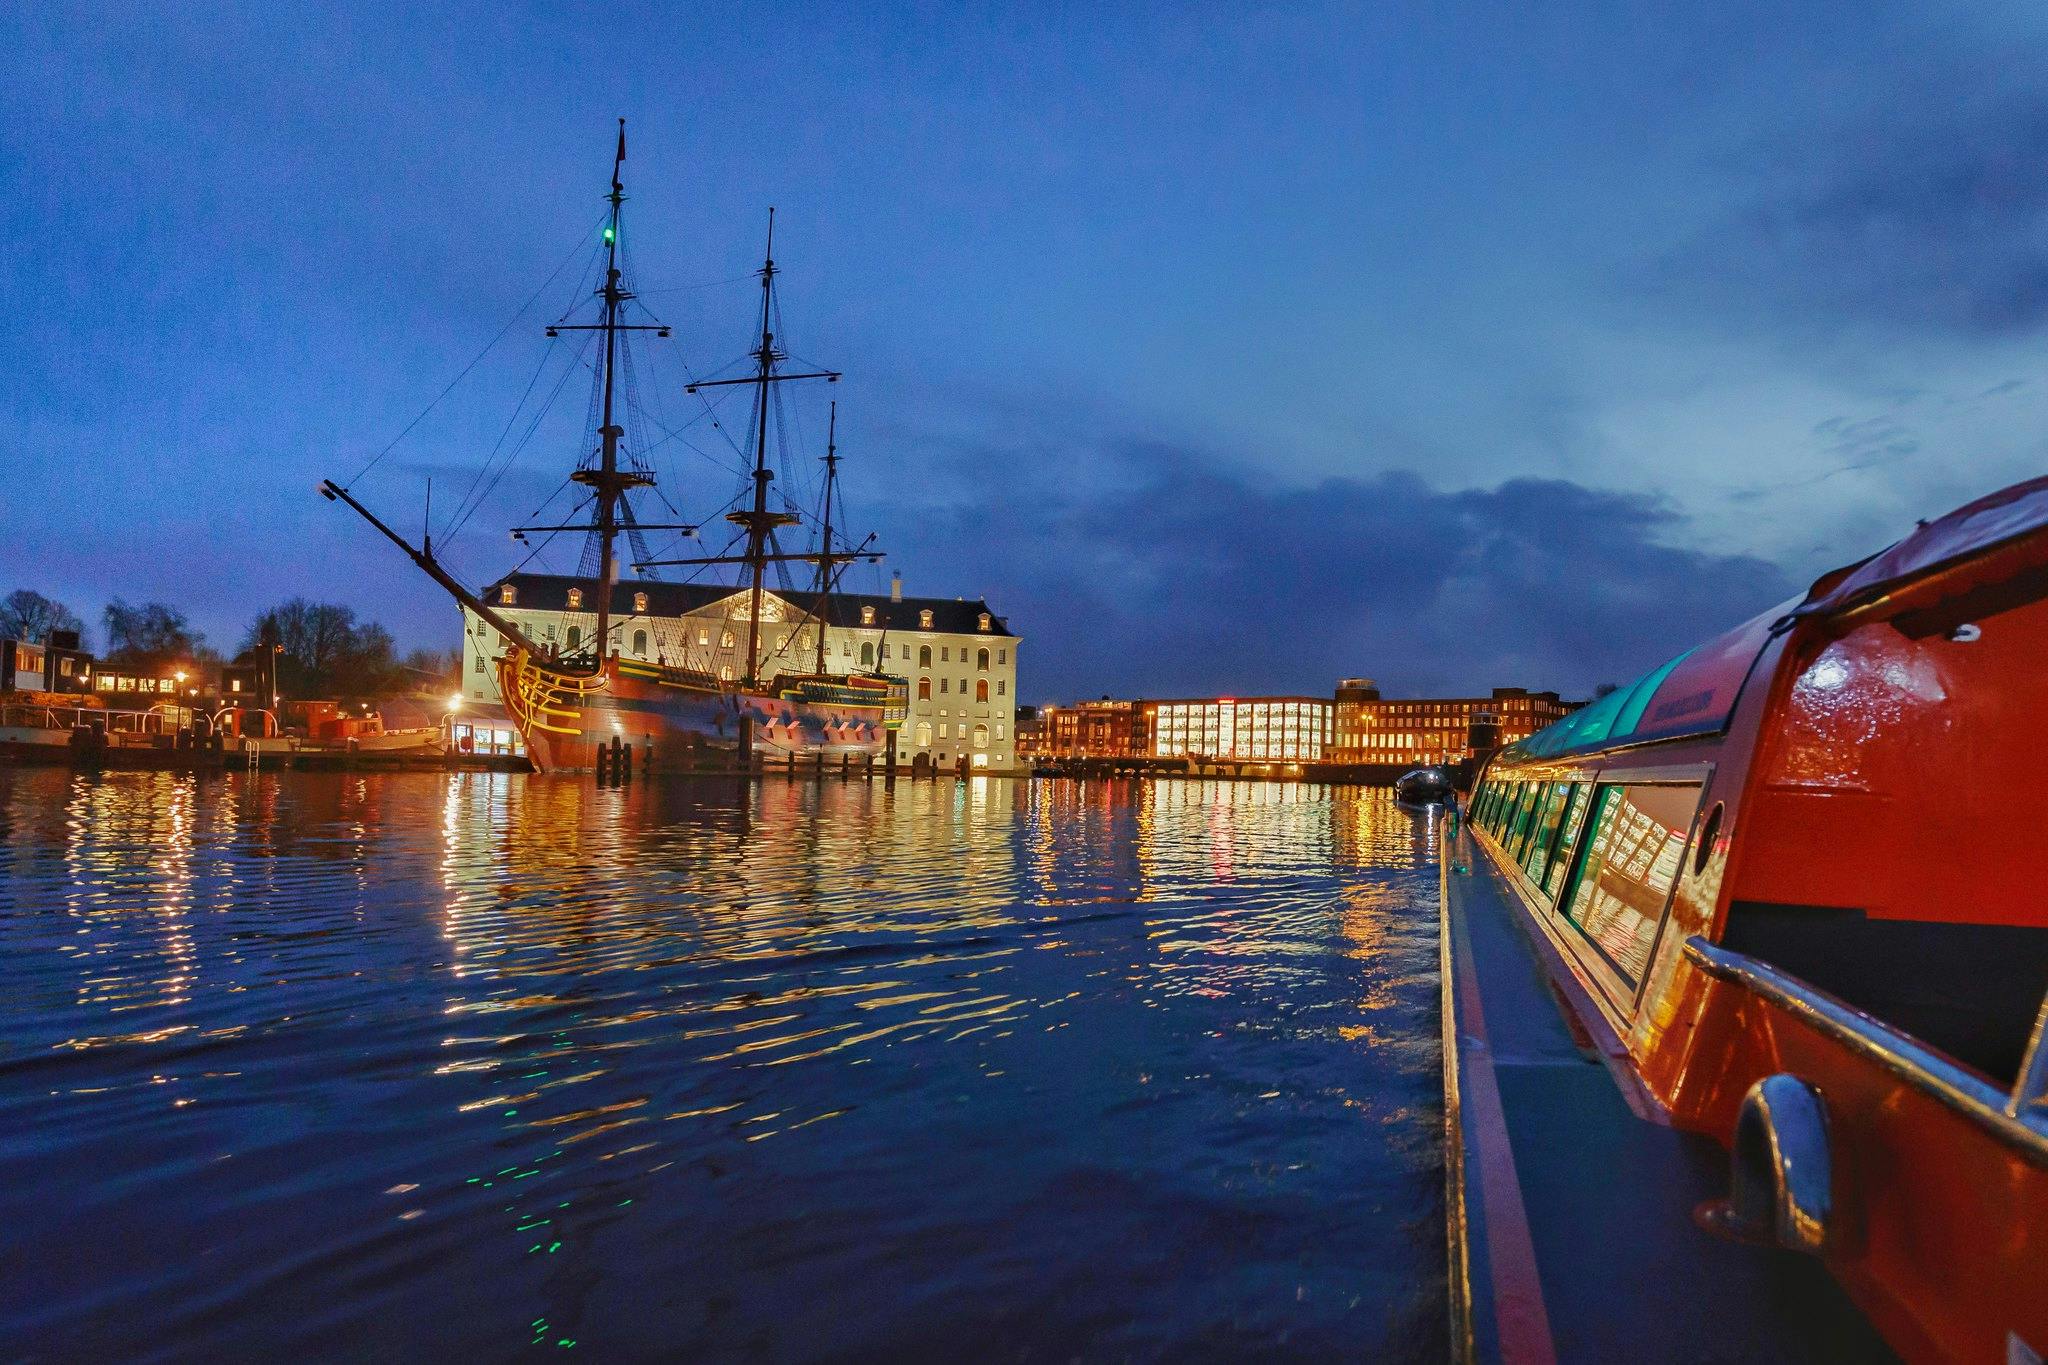 Crucero nocturno por el canal de Amsterdam